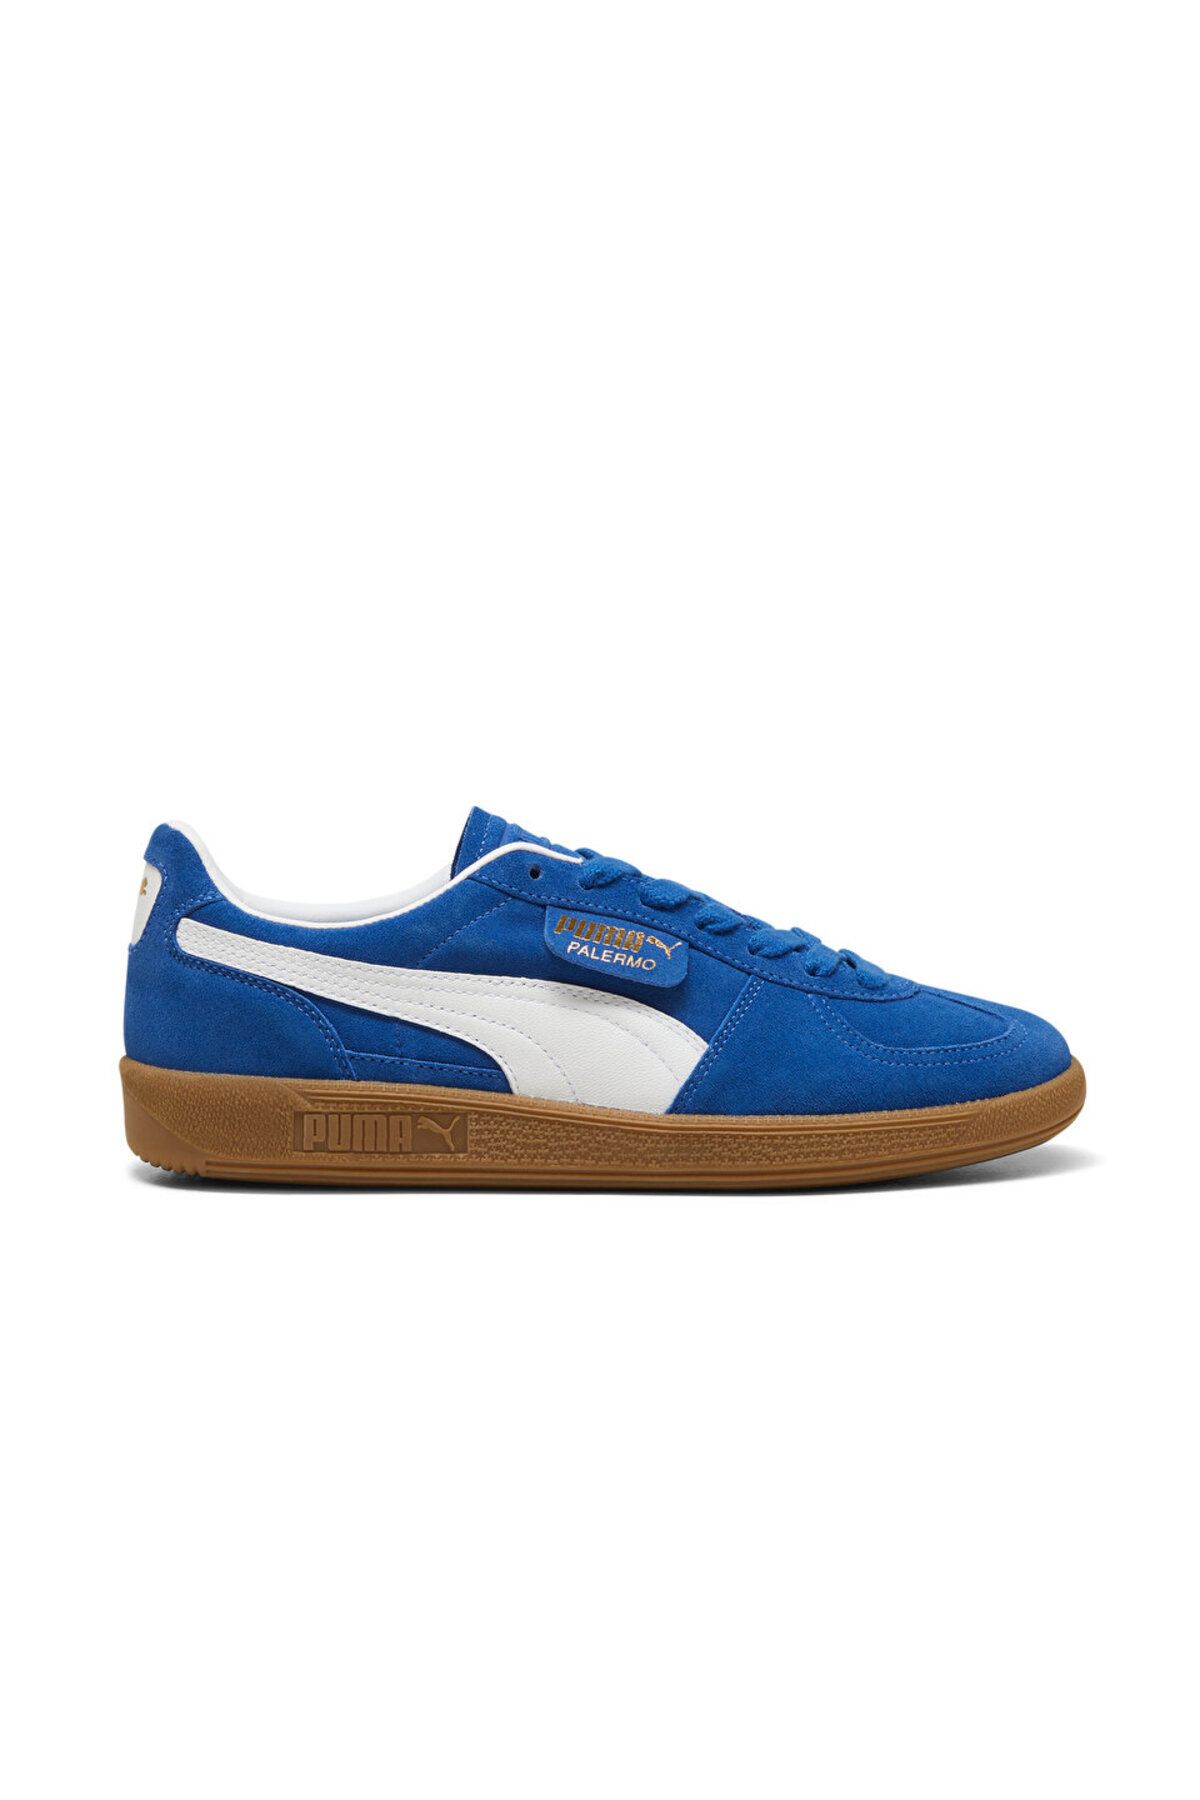 Puma Palermo Lth Erkek Günlük Ayakkabı Mavi Sneaker